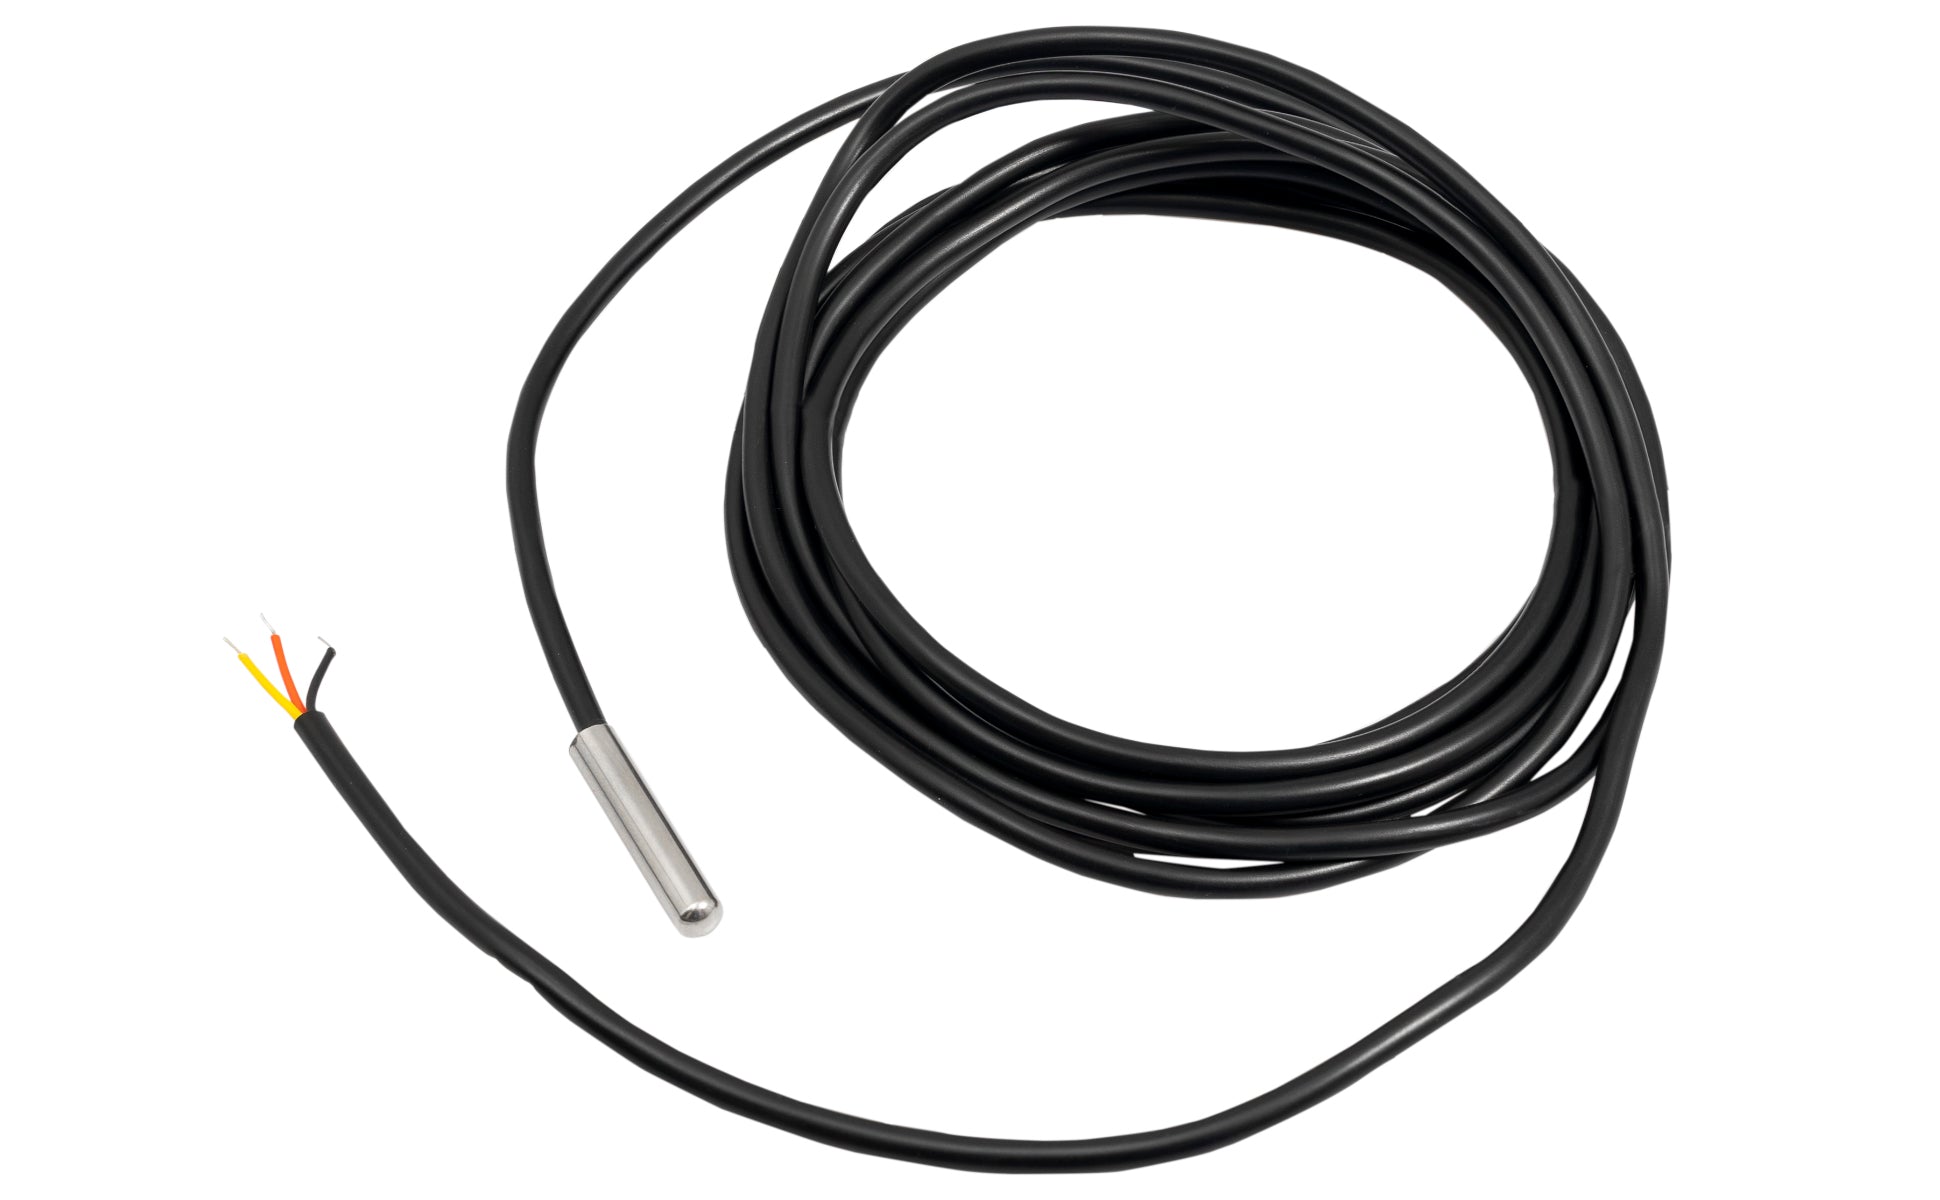 DS18B20 3M Kabel digitaler Edelstahl Temperatursensor ohne Schrumpfschlauch, kompatibel mit Arduino und Raspberry Pi - AZ-Delivery